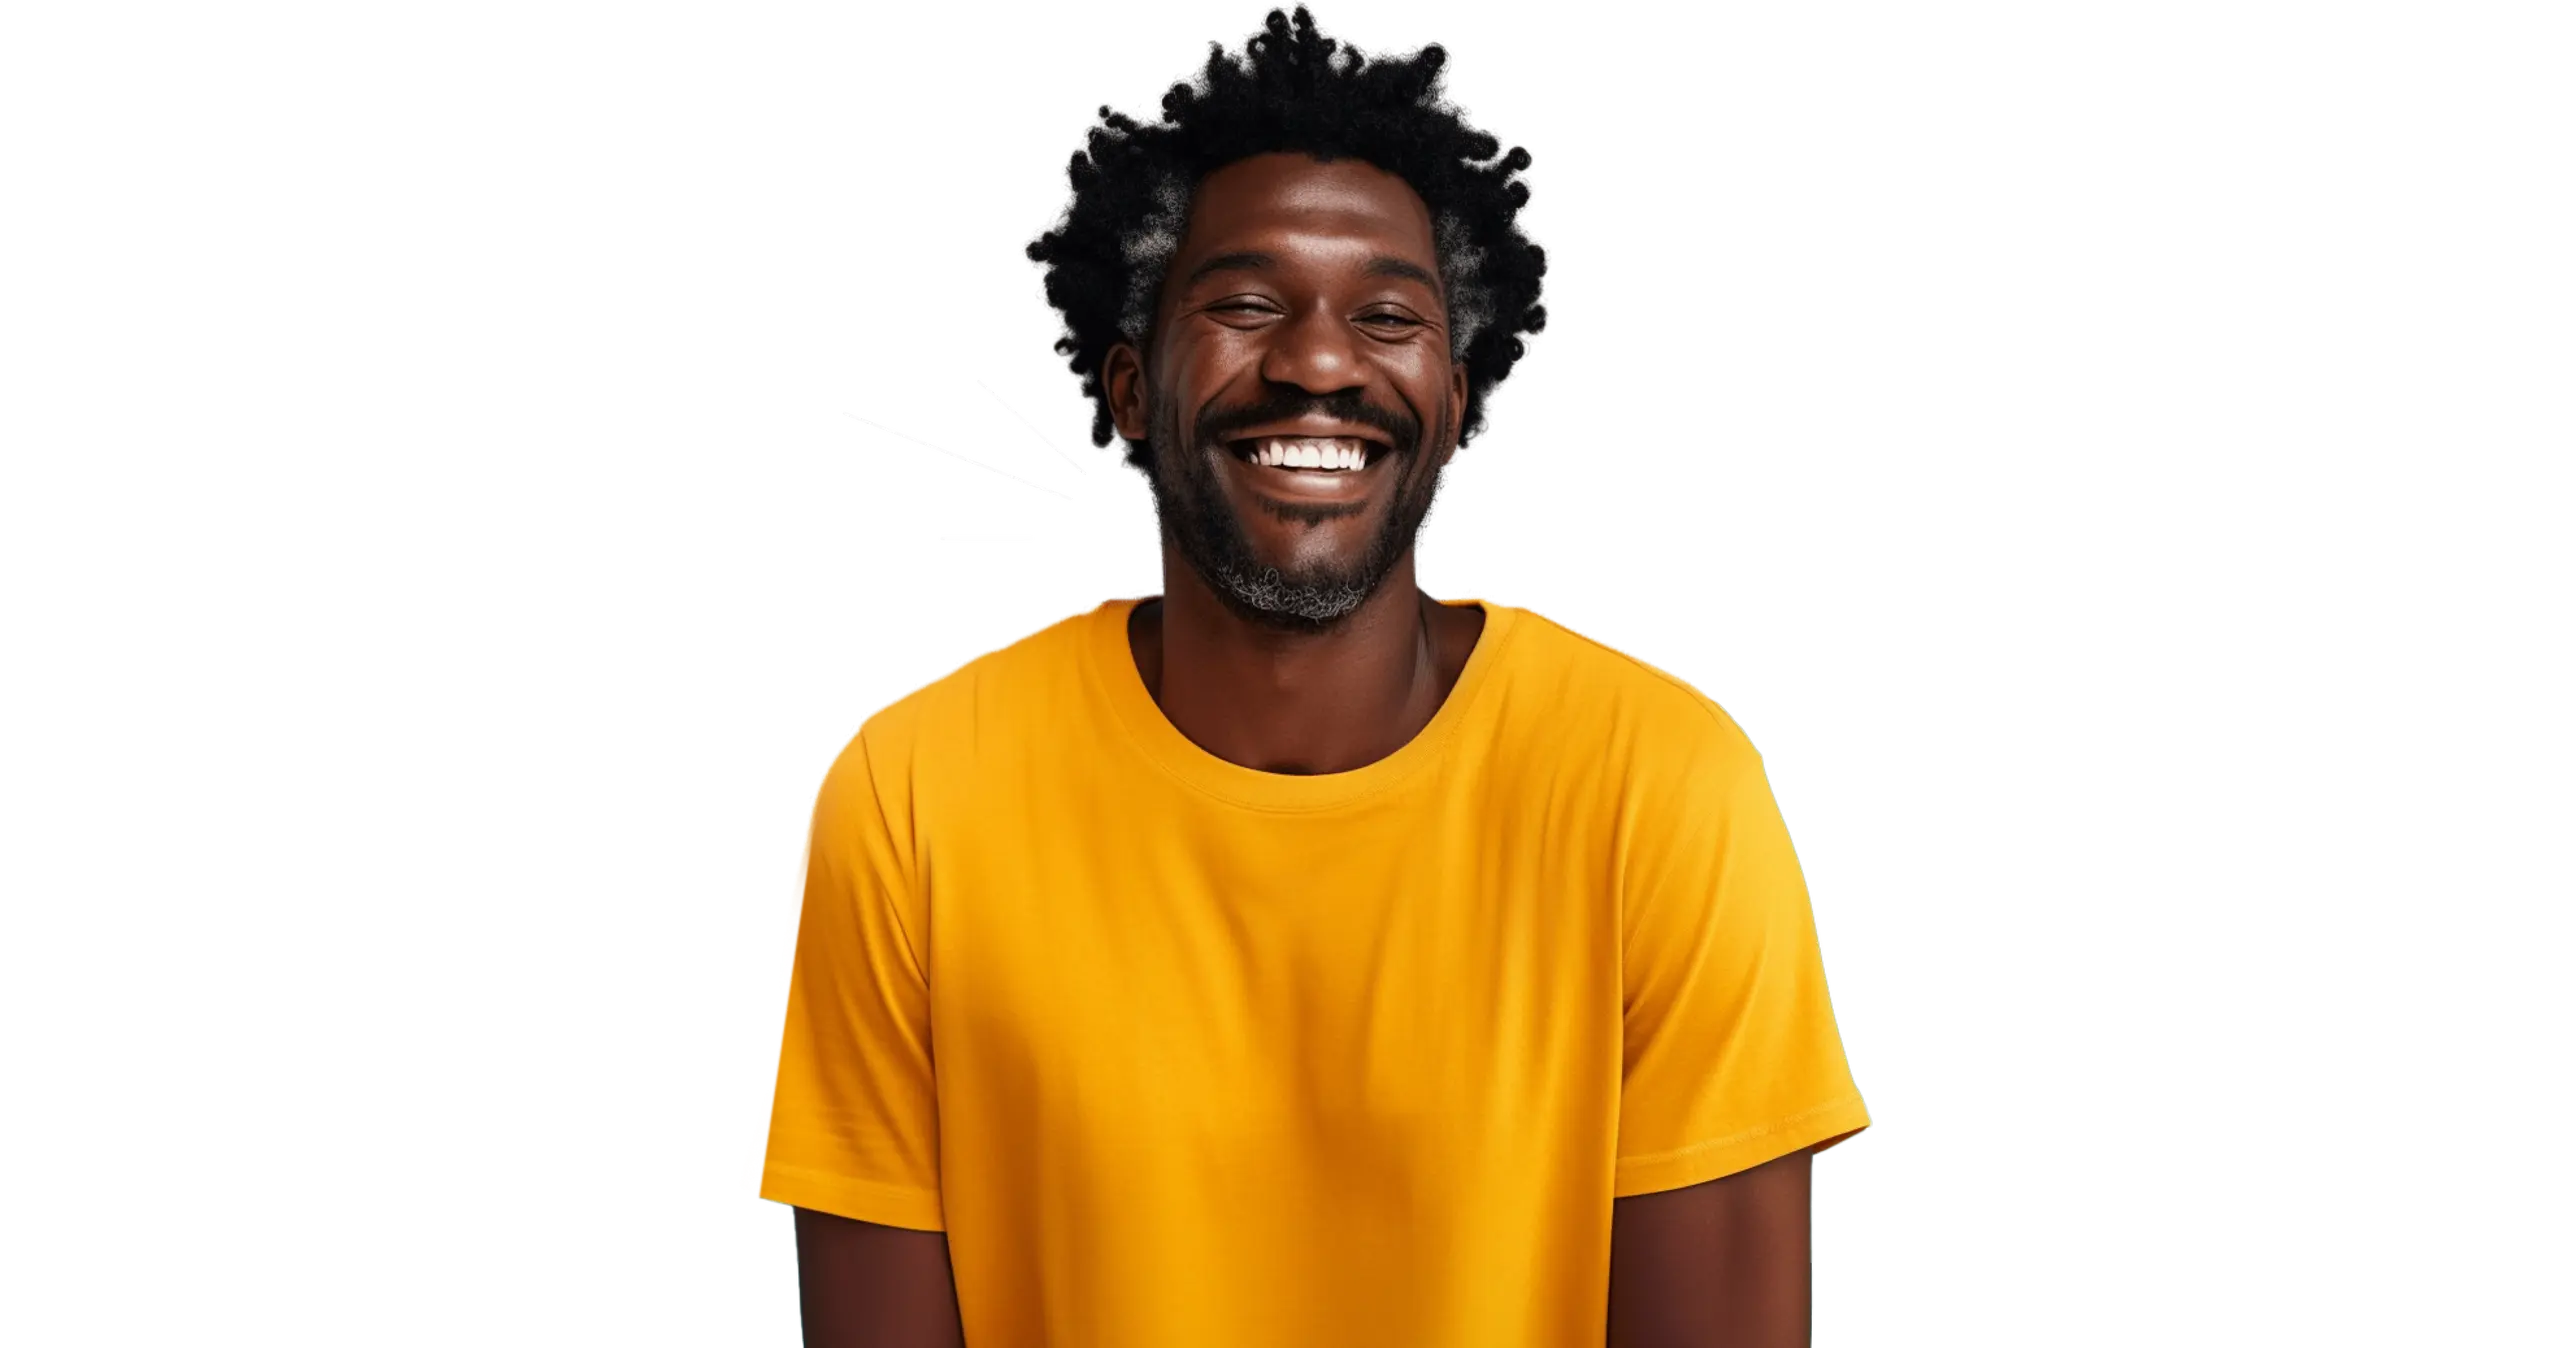 Un hombre sonriente con una camiseta amarilla.